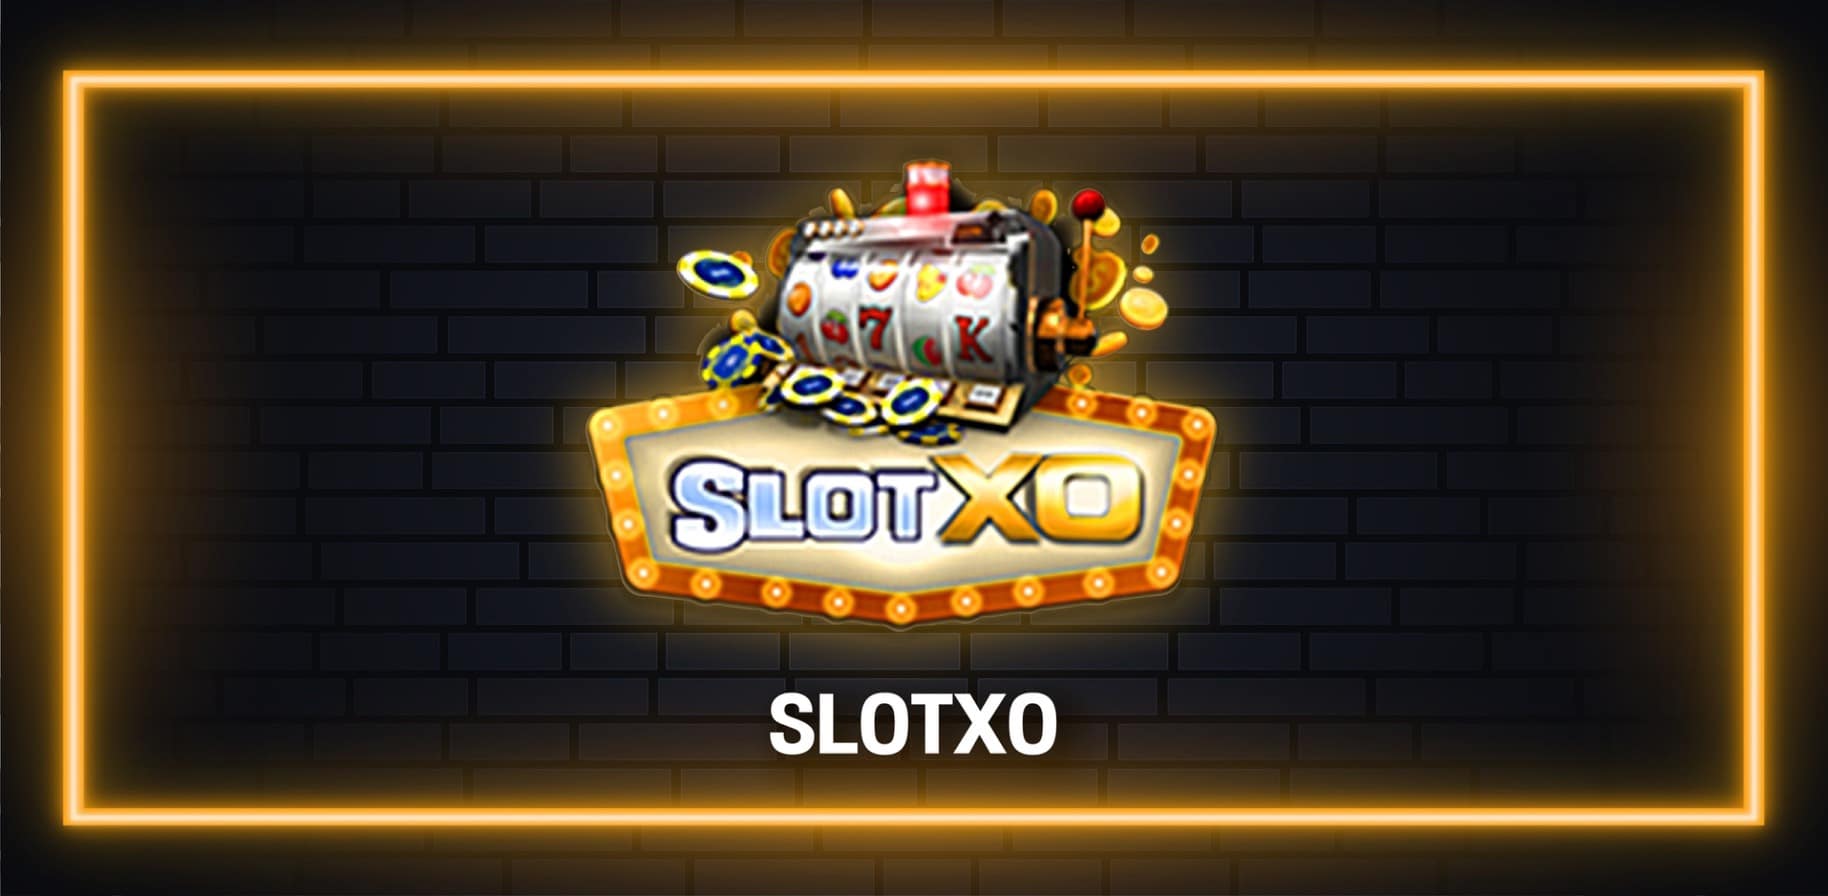 เล่นเกมแล้วต้องการ ที่จะได้กำไรนั้นต้องเลือกค่ายที่ดีอย่าง SLOTXO